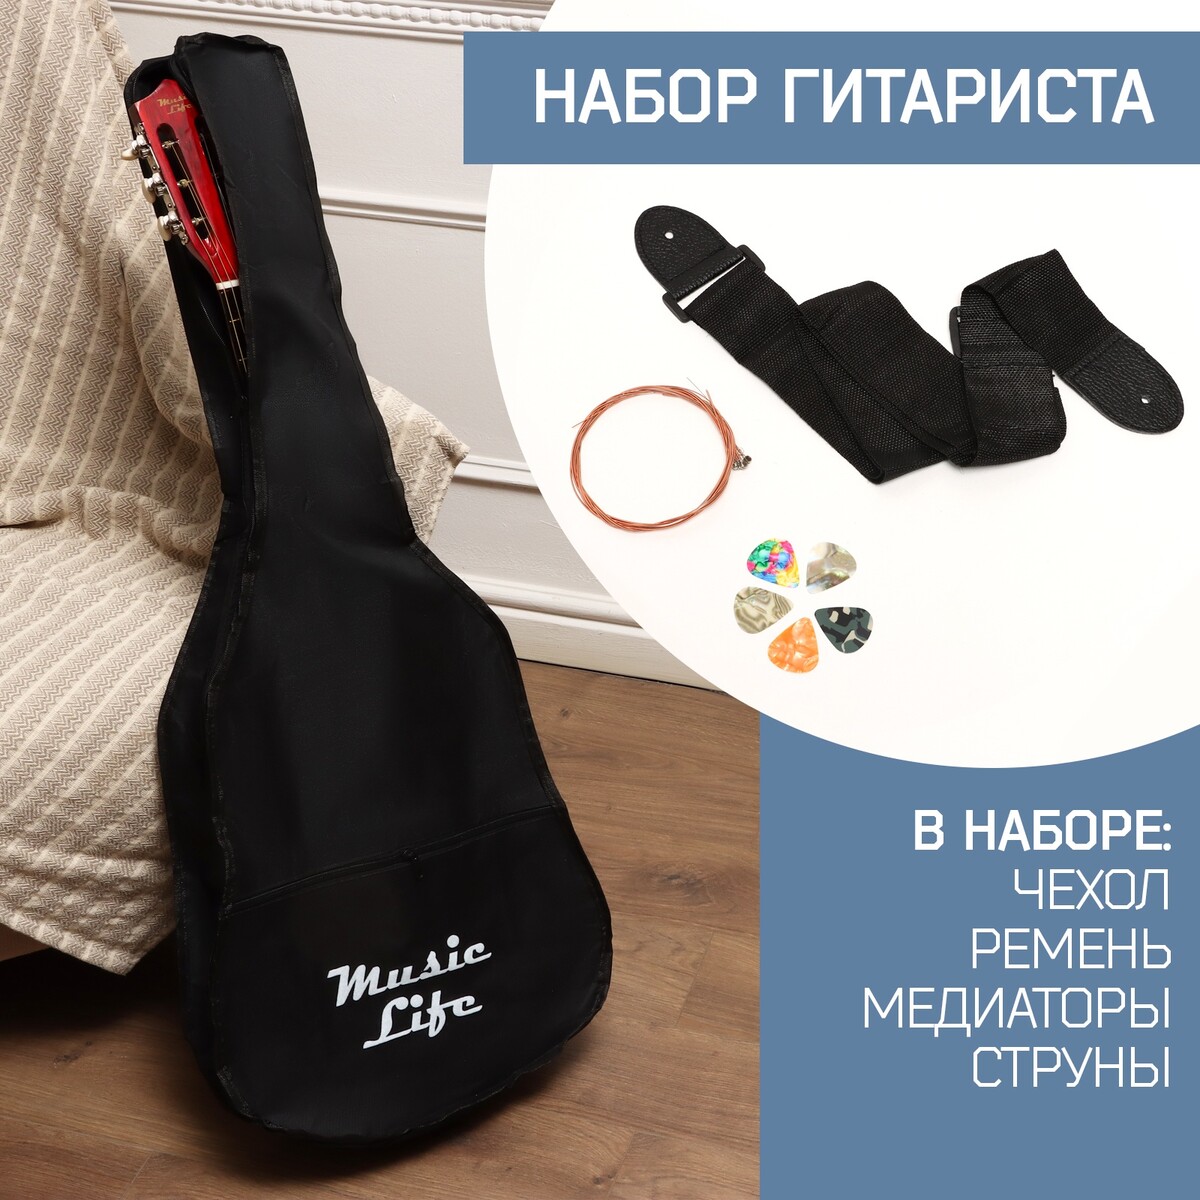 Набор аксессуаров для гитары music life: ремень, чехол 105х41 см, медиаторы 5 штук, струны чехол для классической гитары 106 х 38 см